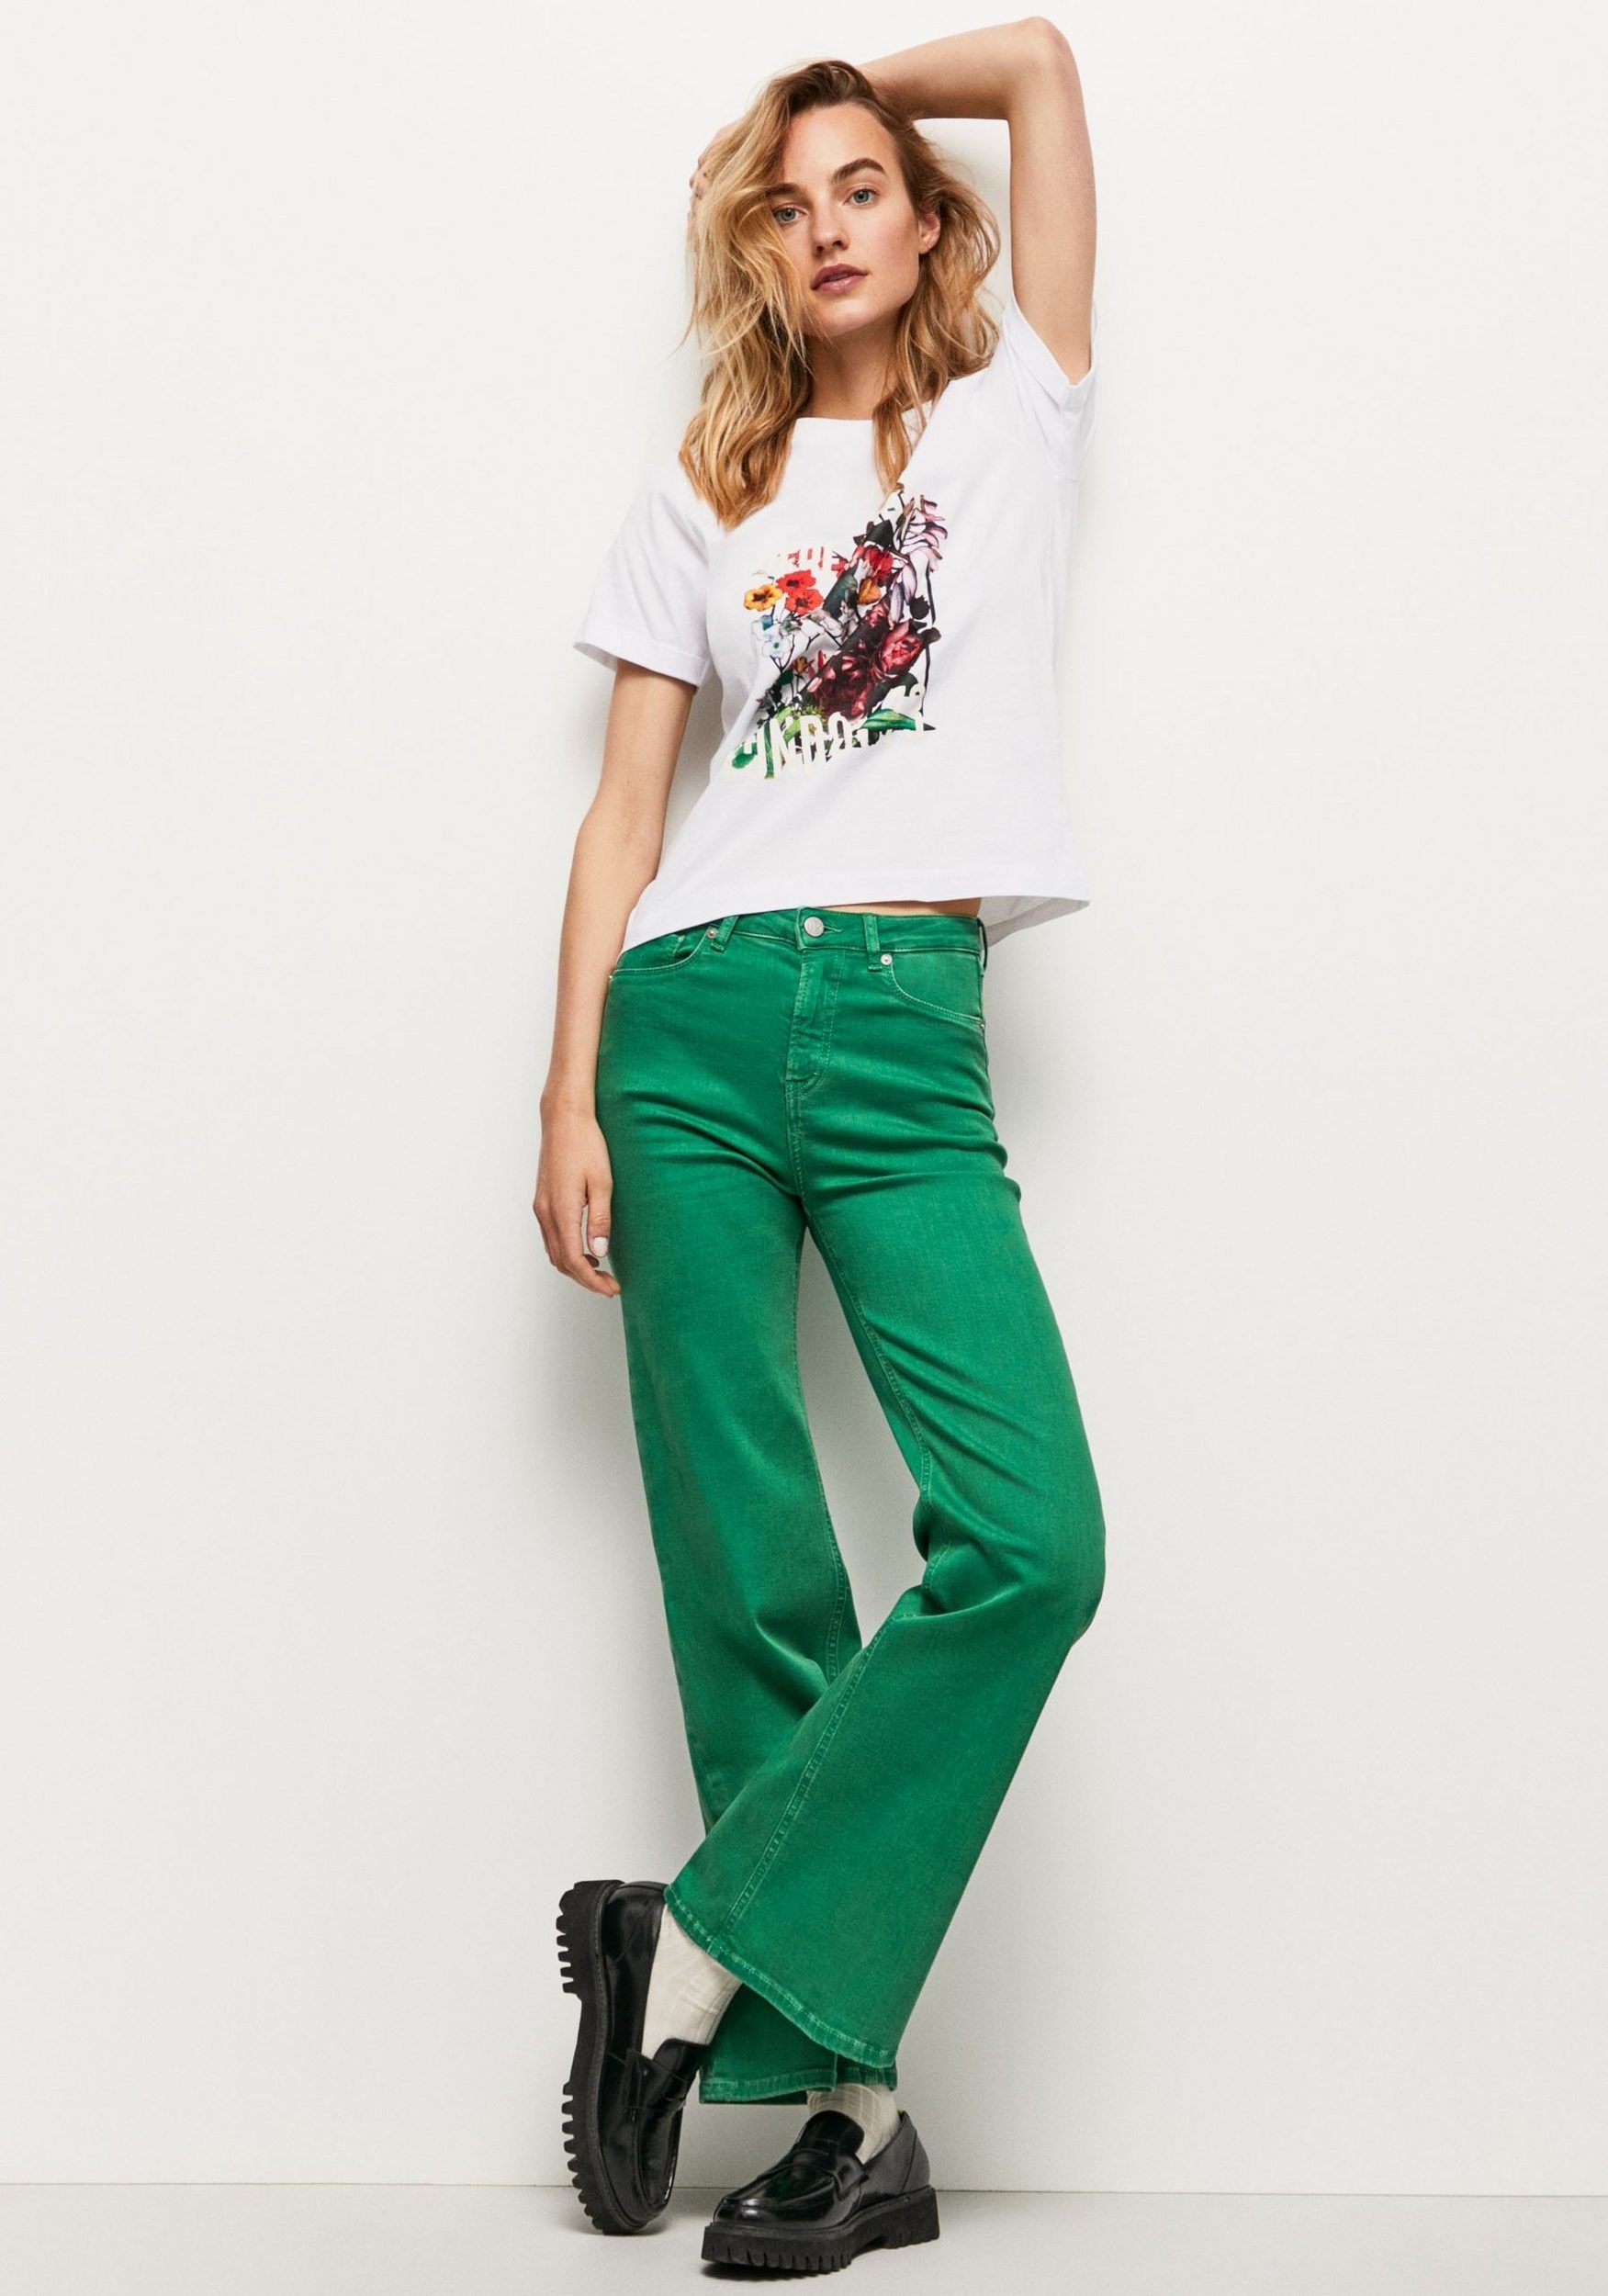 Pepe markentypischem oversized T-Shirt mit tollem 800WHITE Jeans und Frontprint Passform in